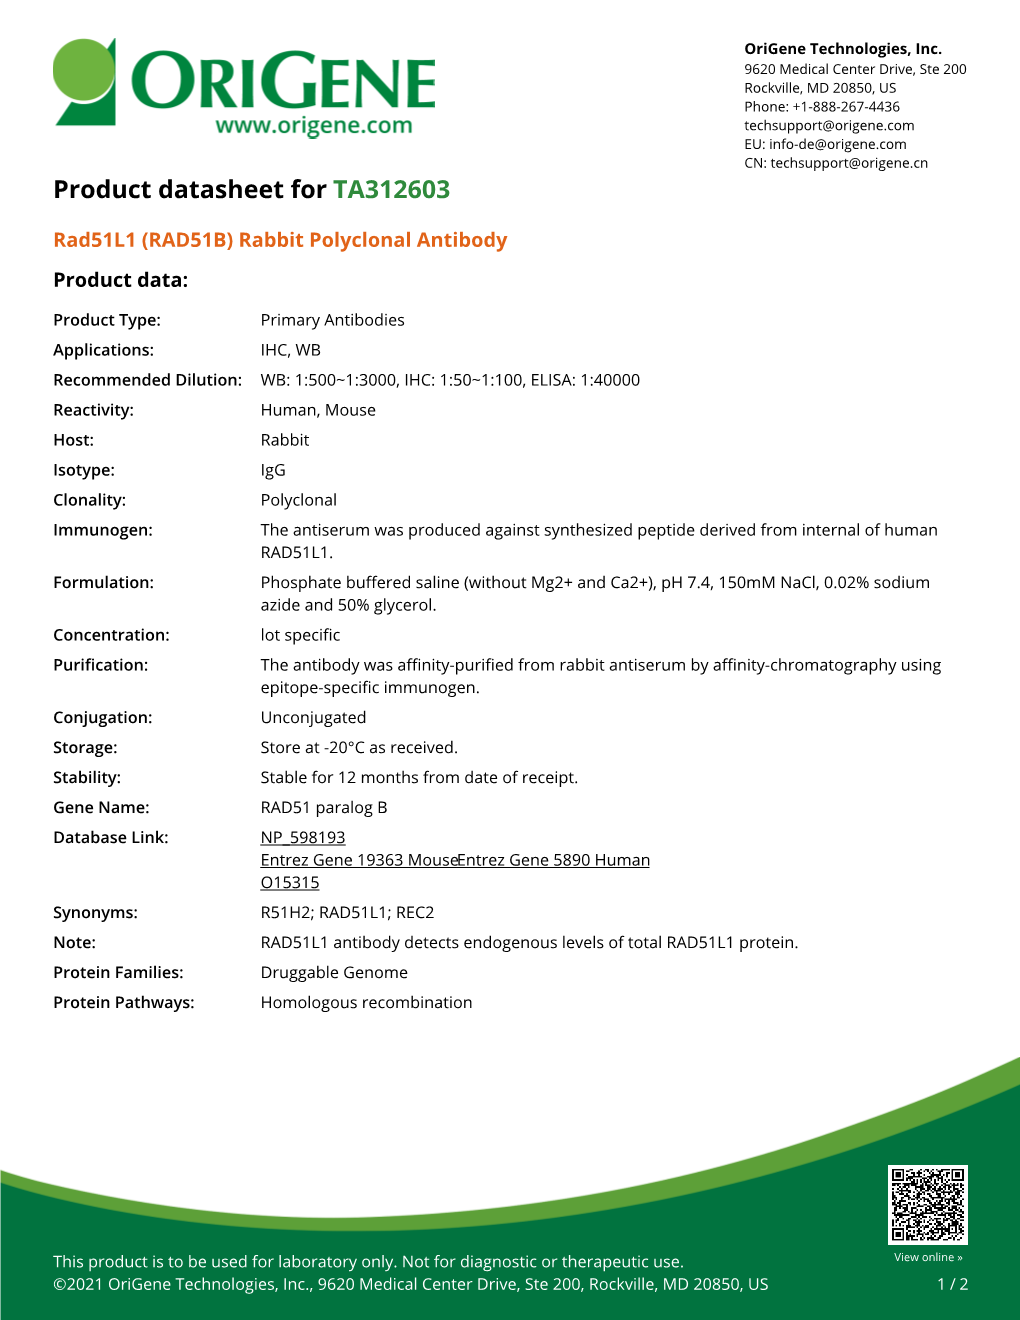 Rad51l1 (RAD51B) Rabbit Polyclonal Antibody Product Data